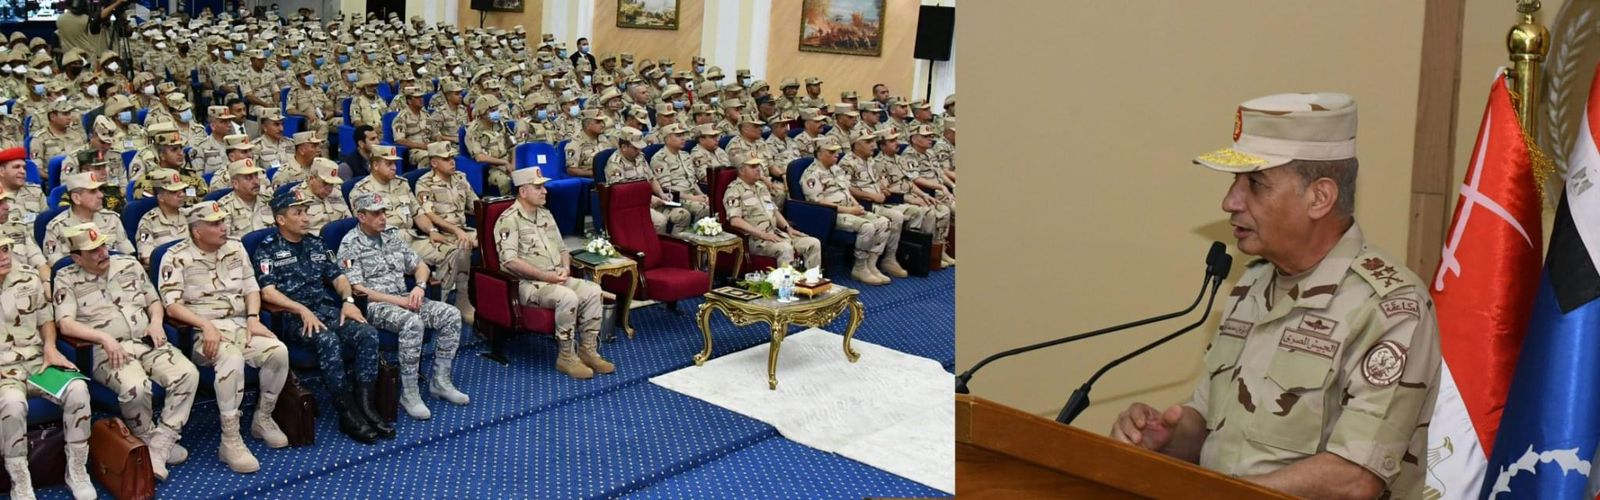 وزير الدفاع يشهد المرحلة الرئيسية لمشروع خالد